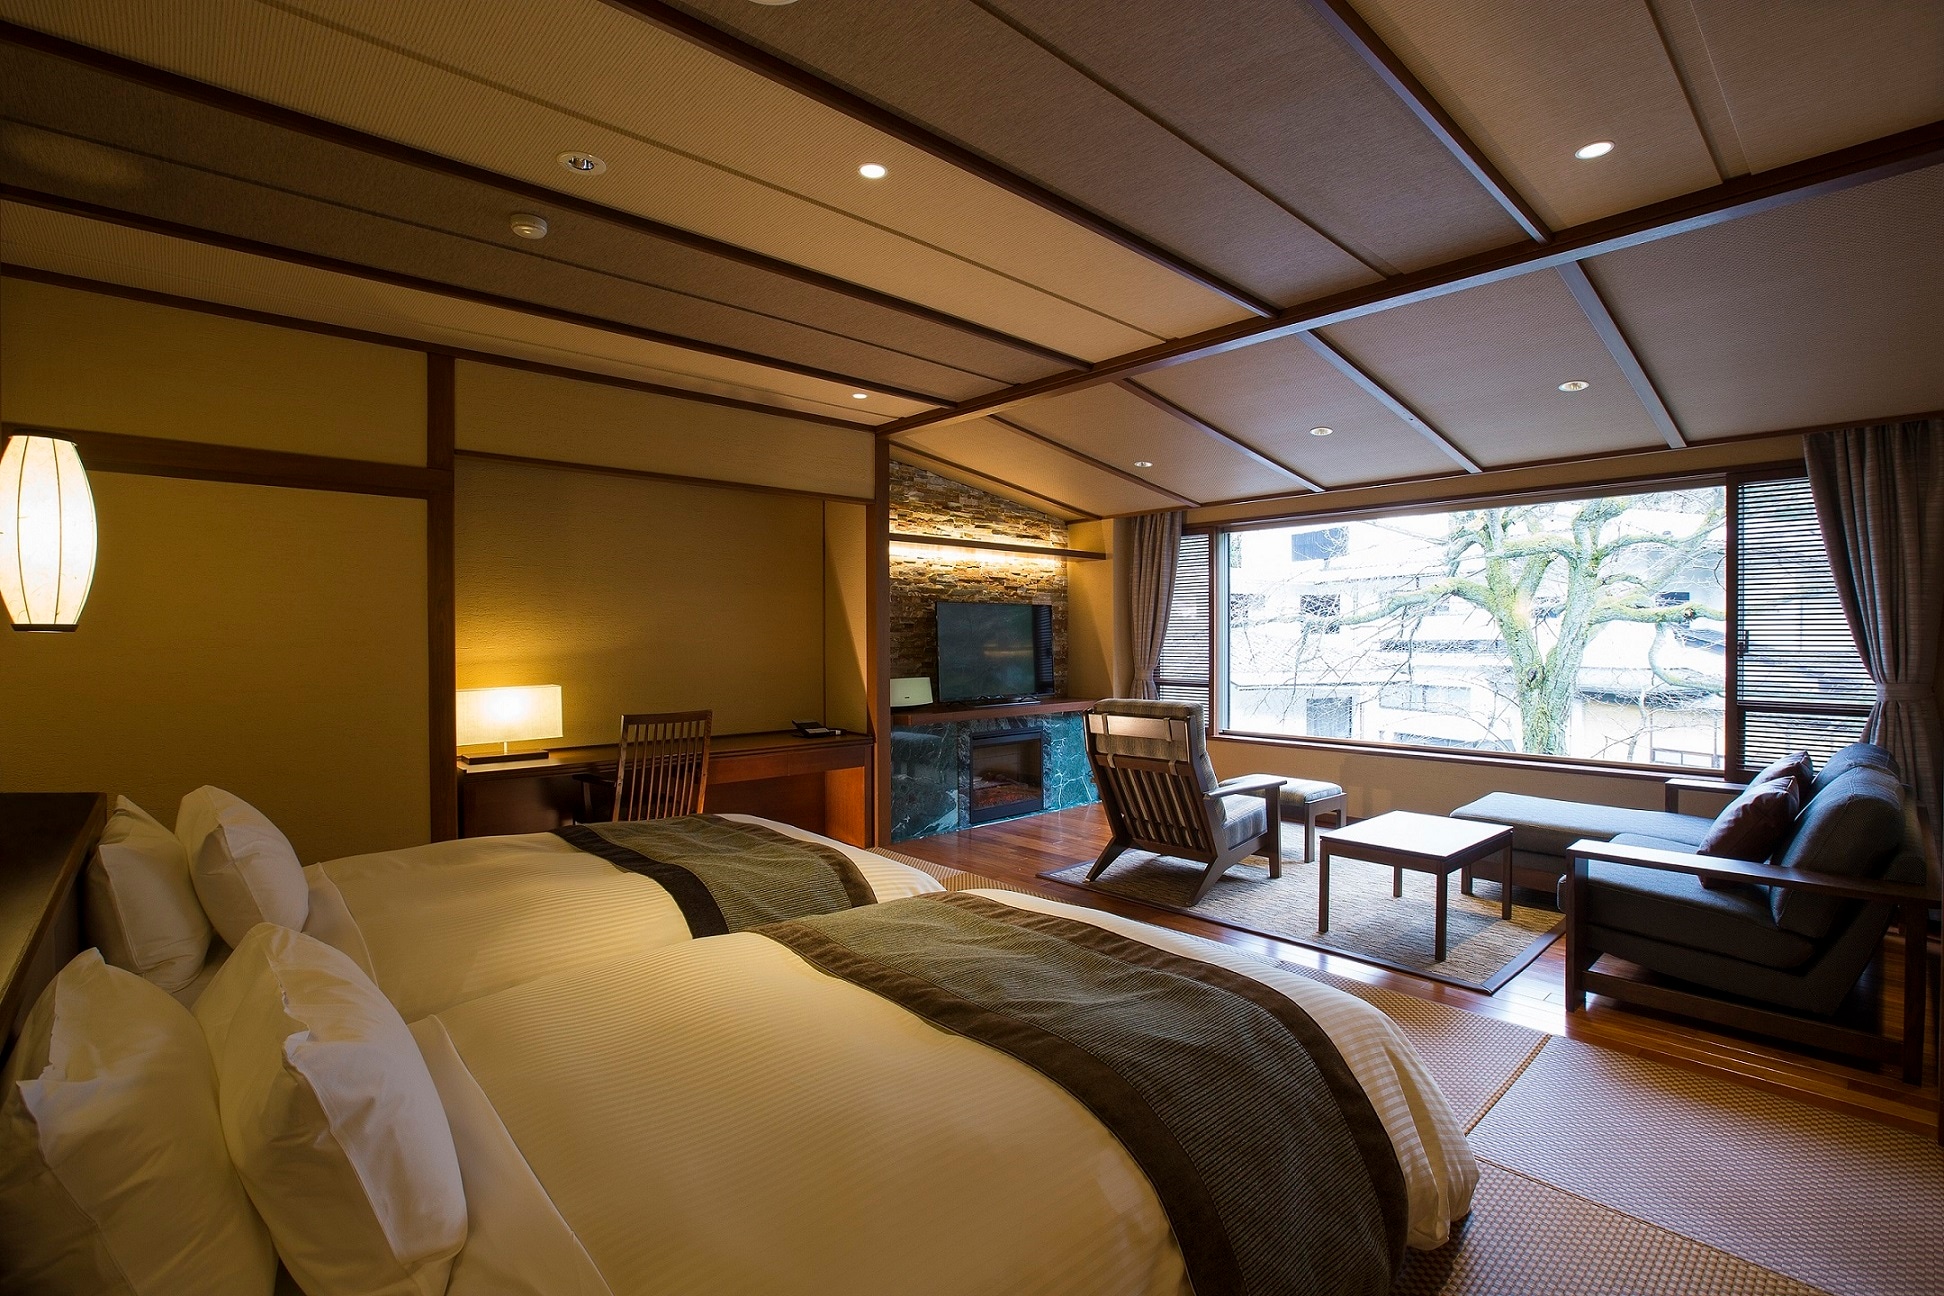 【본관 : 일본 모던 트윈】 샤워 부스 타입 (예) 트윈 침대가있는 현대적인 스타일.